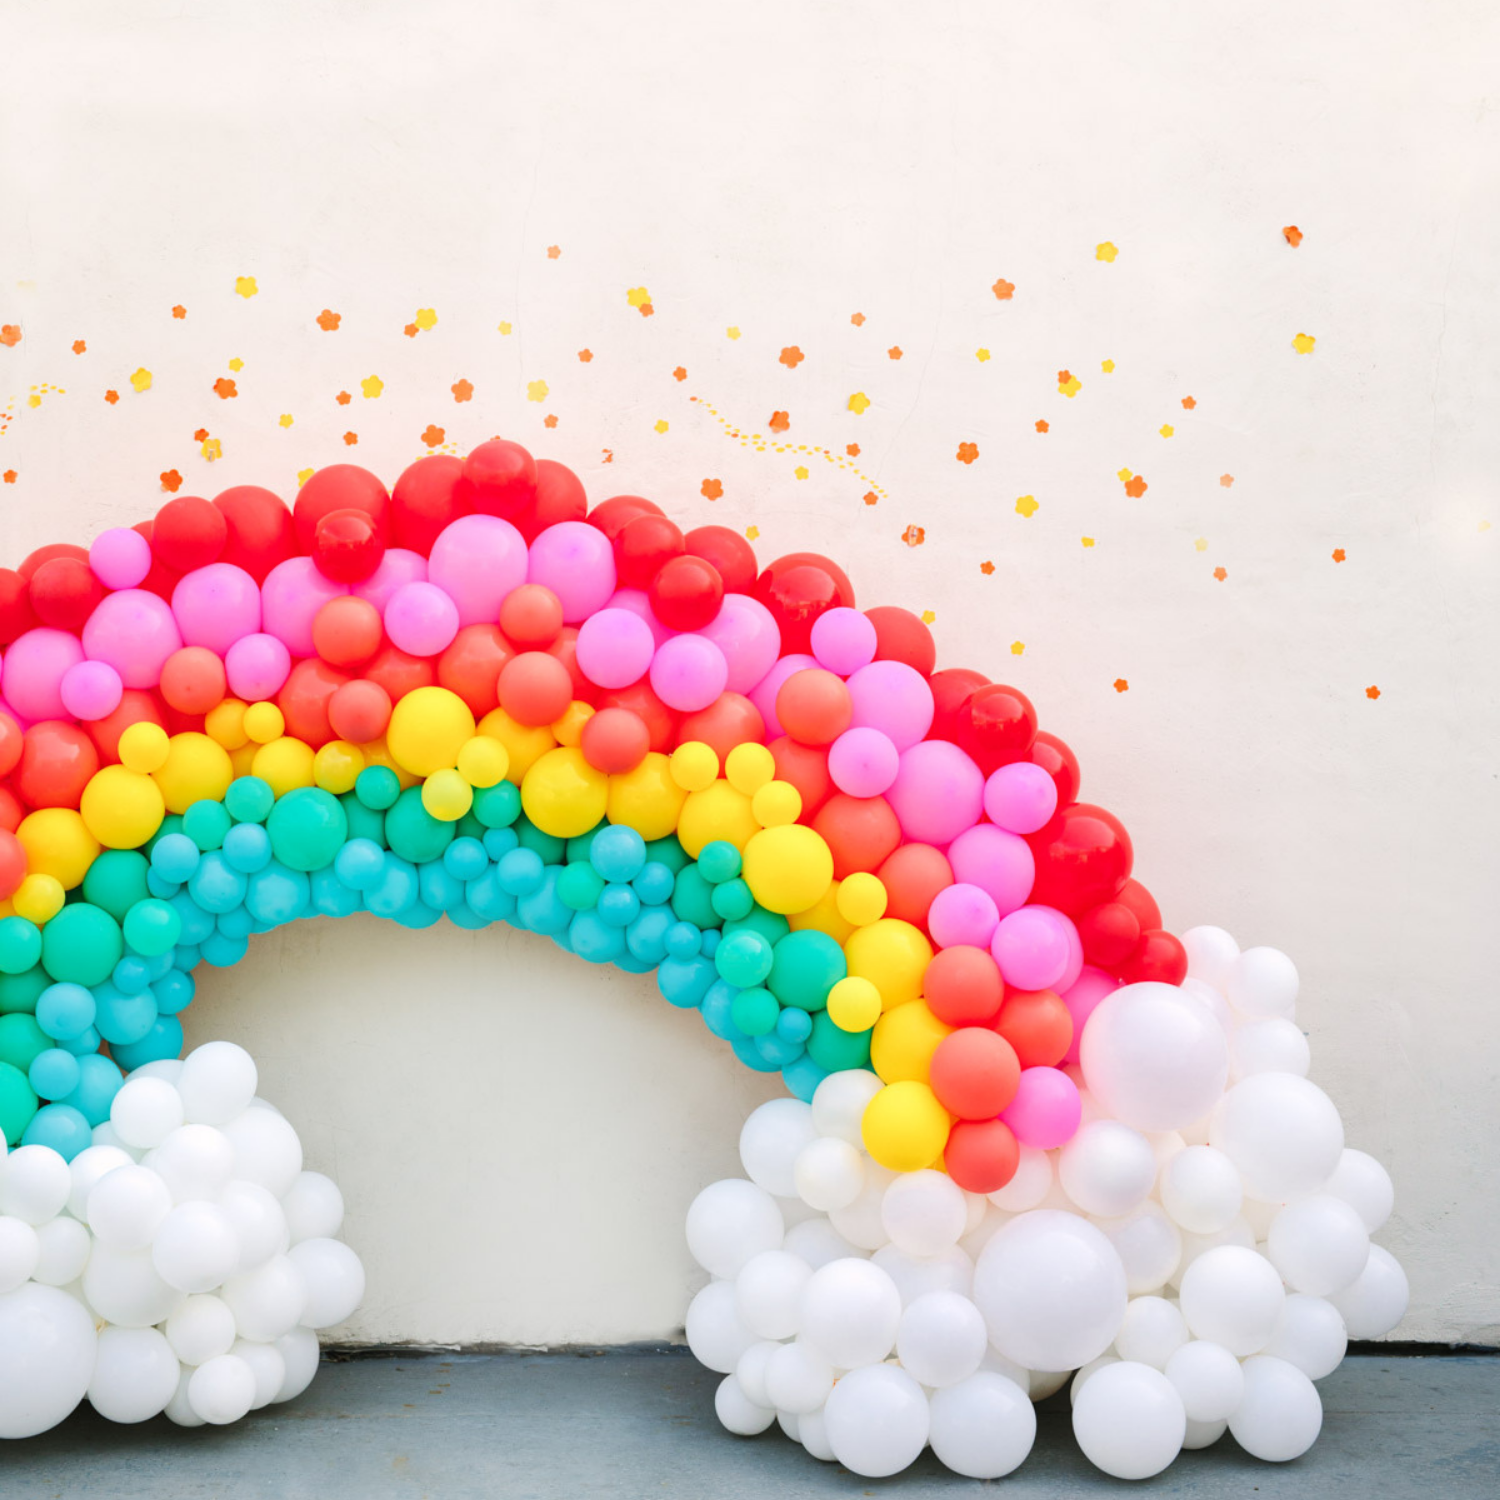 Rainbow balloon arch decoration. 